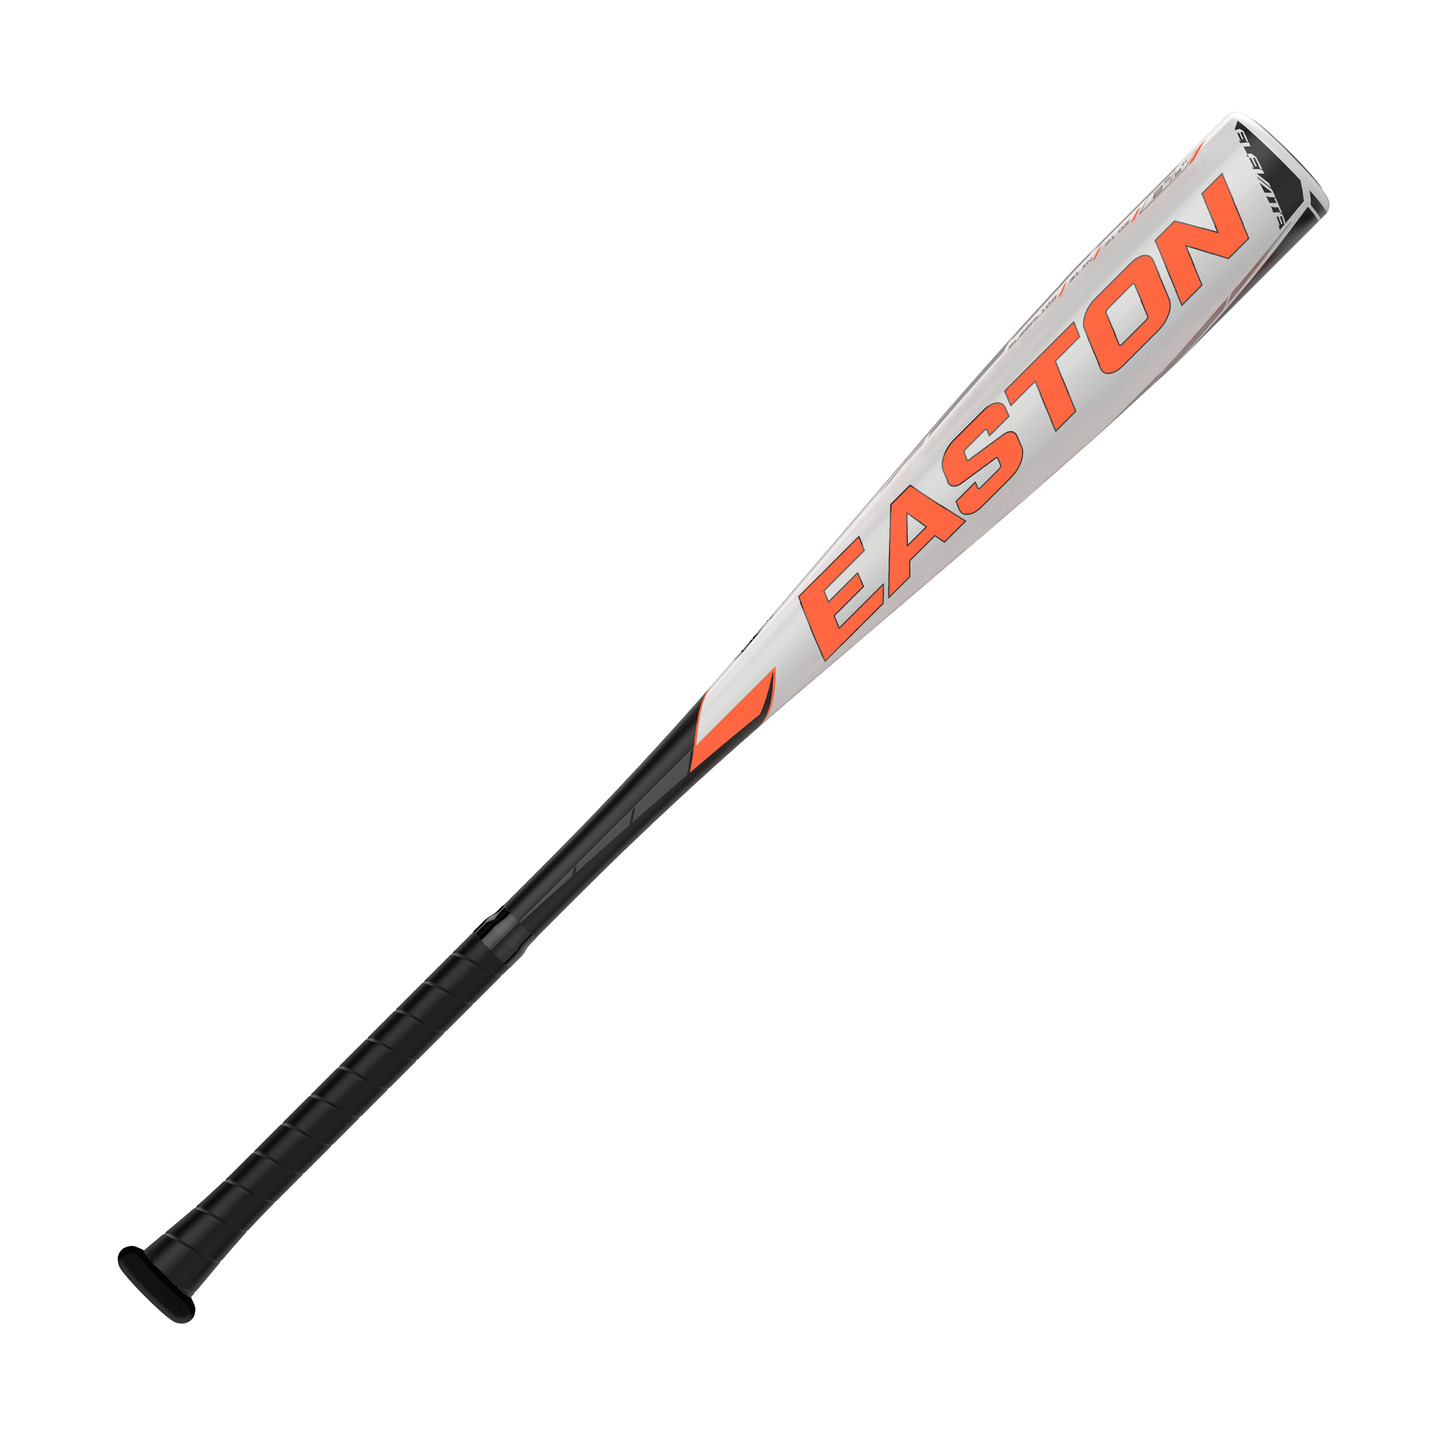 Eason Elevate Alloy USSSA Drop 10 Baseball Bat SL20EL108